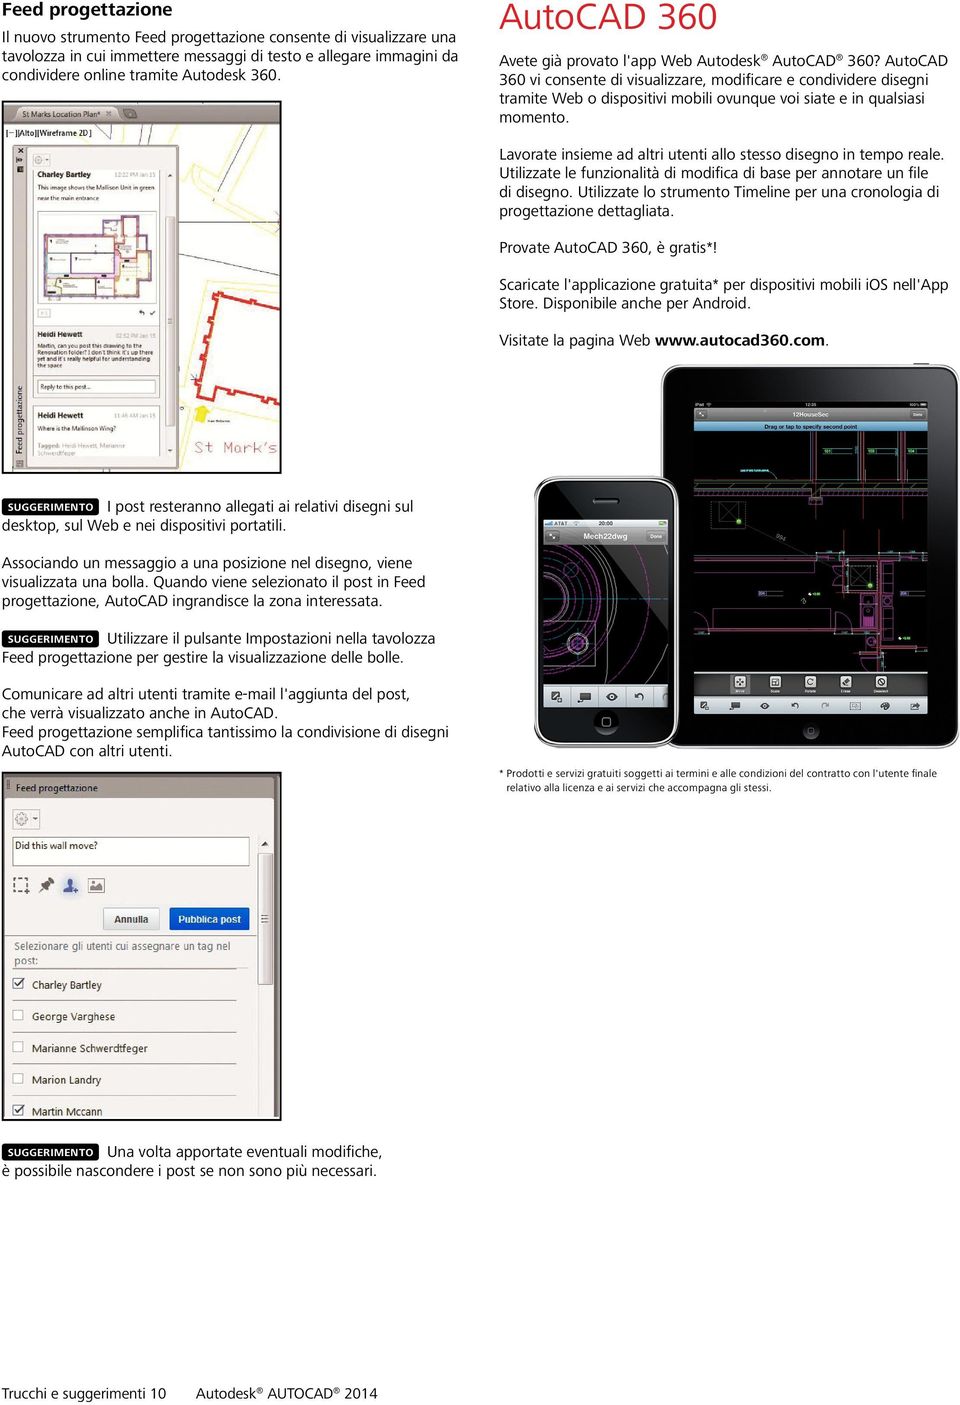 AutoCAD 360 vi consente di visualizzare, modificare e condividere disegni tramite Web o dispositivi mobili ovunque voi siate e in qualsiasi momento.